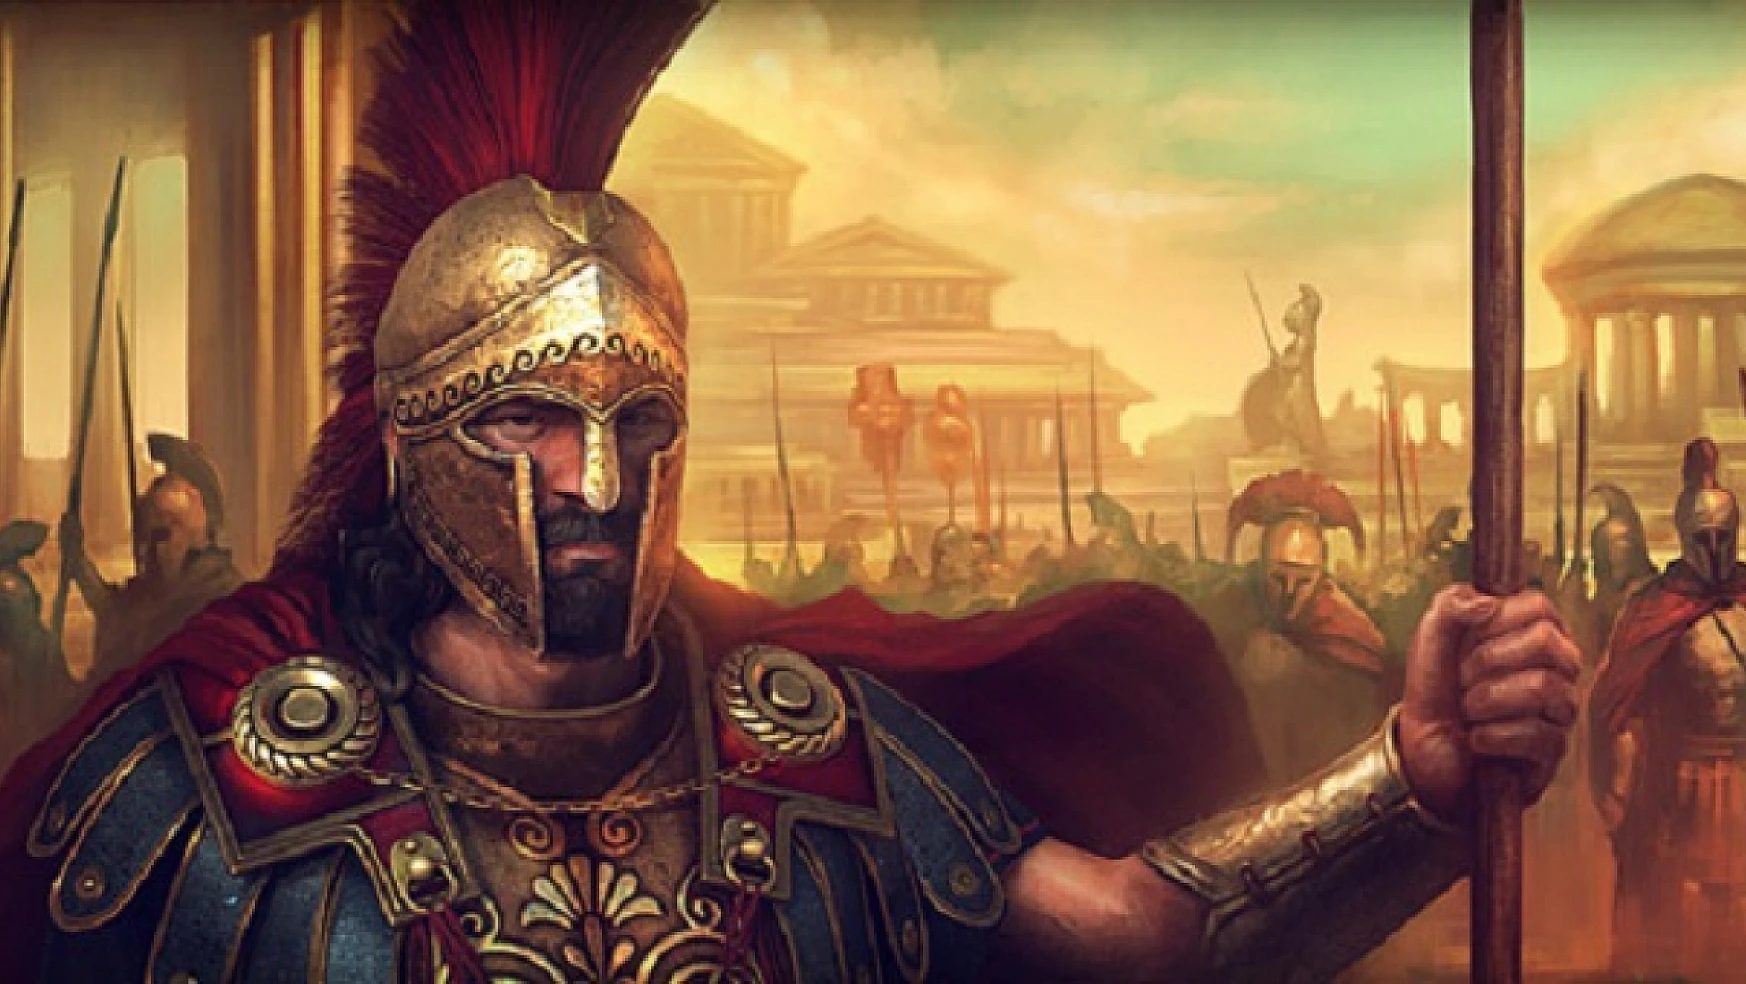 Spartalılar: antik dünyanın en güçlü savaşçıları ve onların mirası